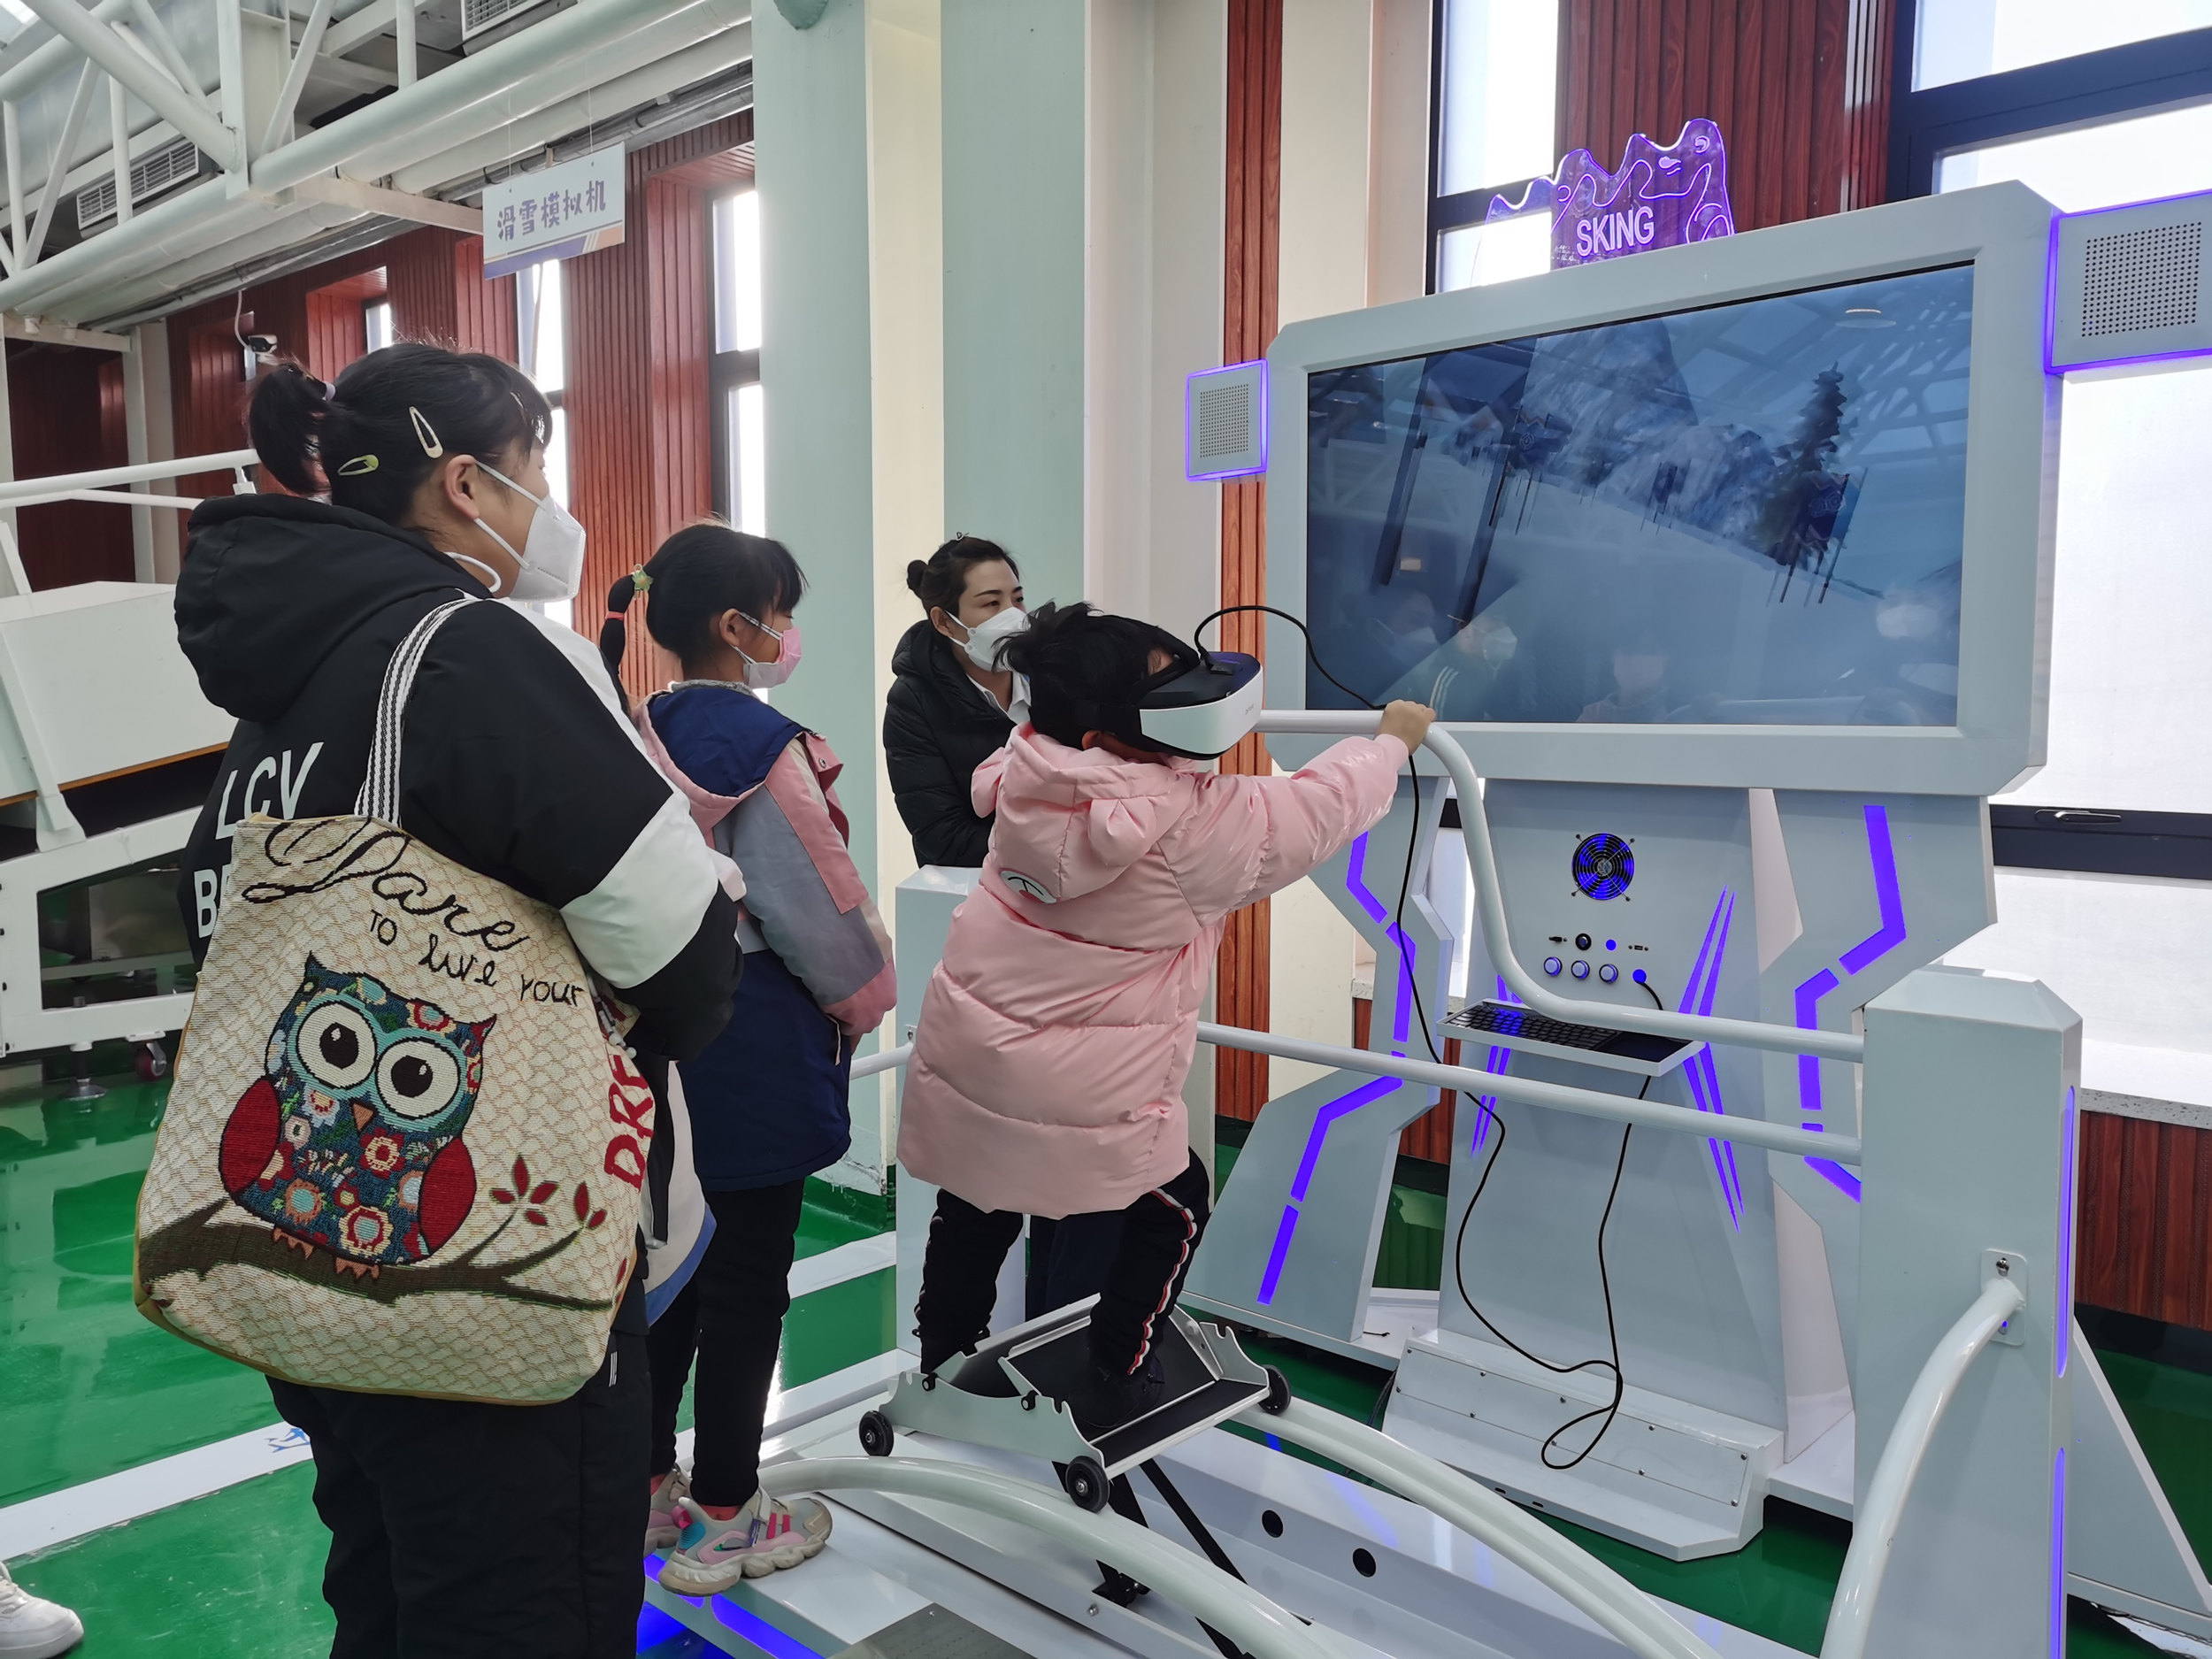 小朋友在滑雪VR体验机前体验模拟滑雪。 李智慧摄